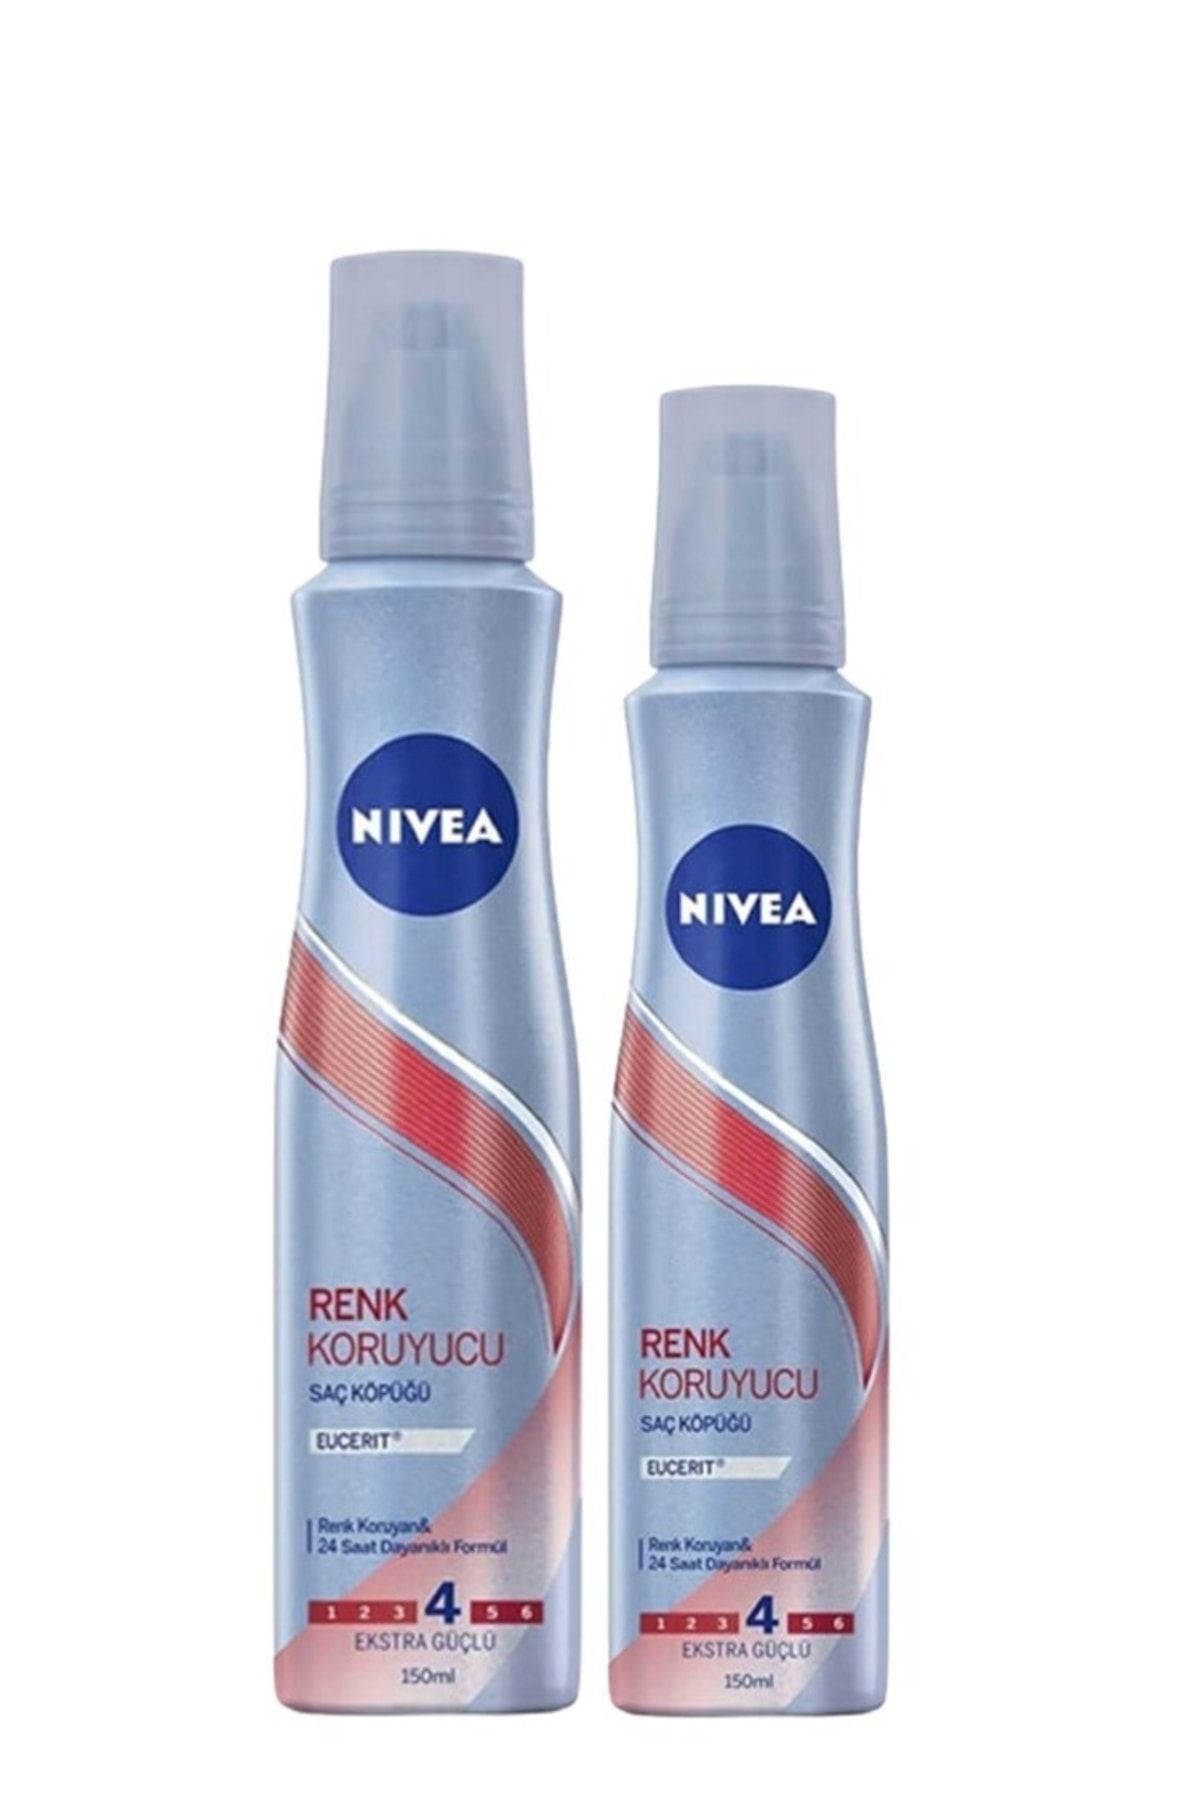 NIVEA Saç Spreyi Renk Koruyucu 250 ml + Renk Koruyucu Saç Köpüğü 150 ml